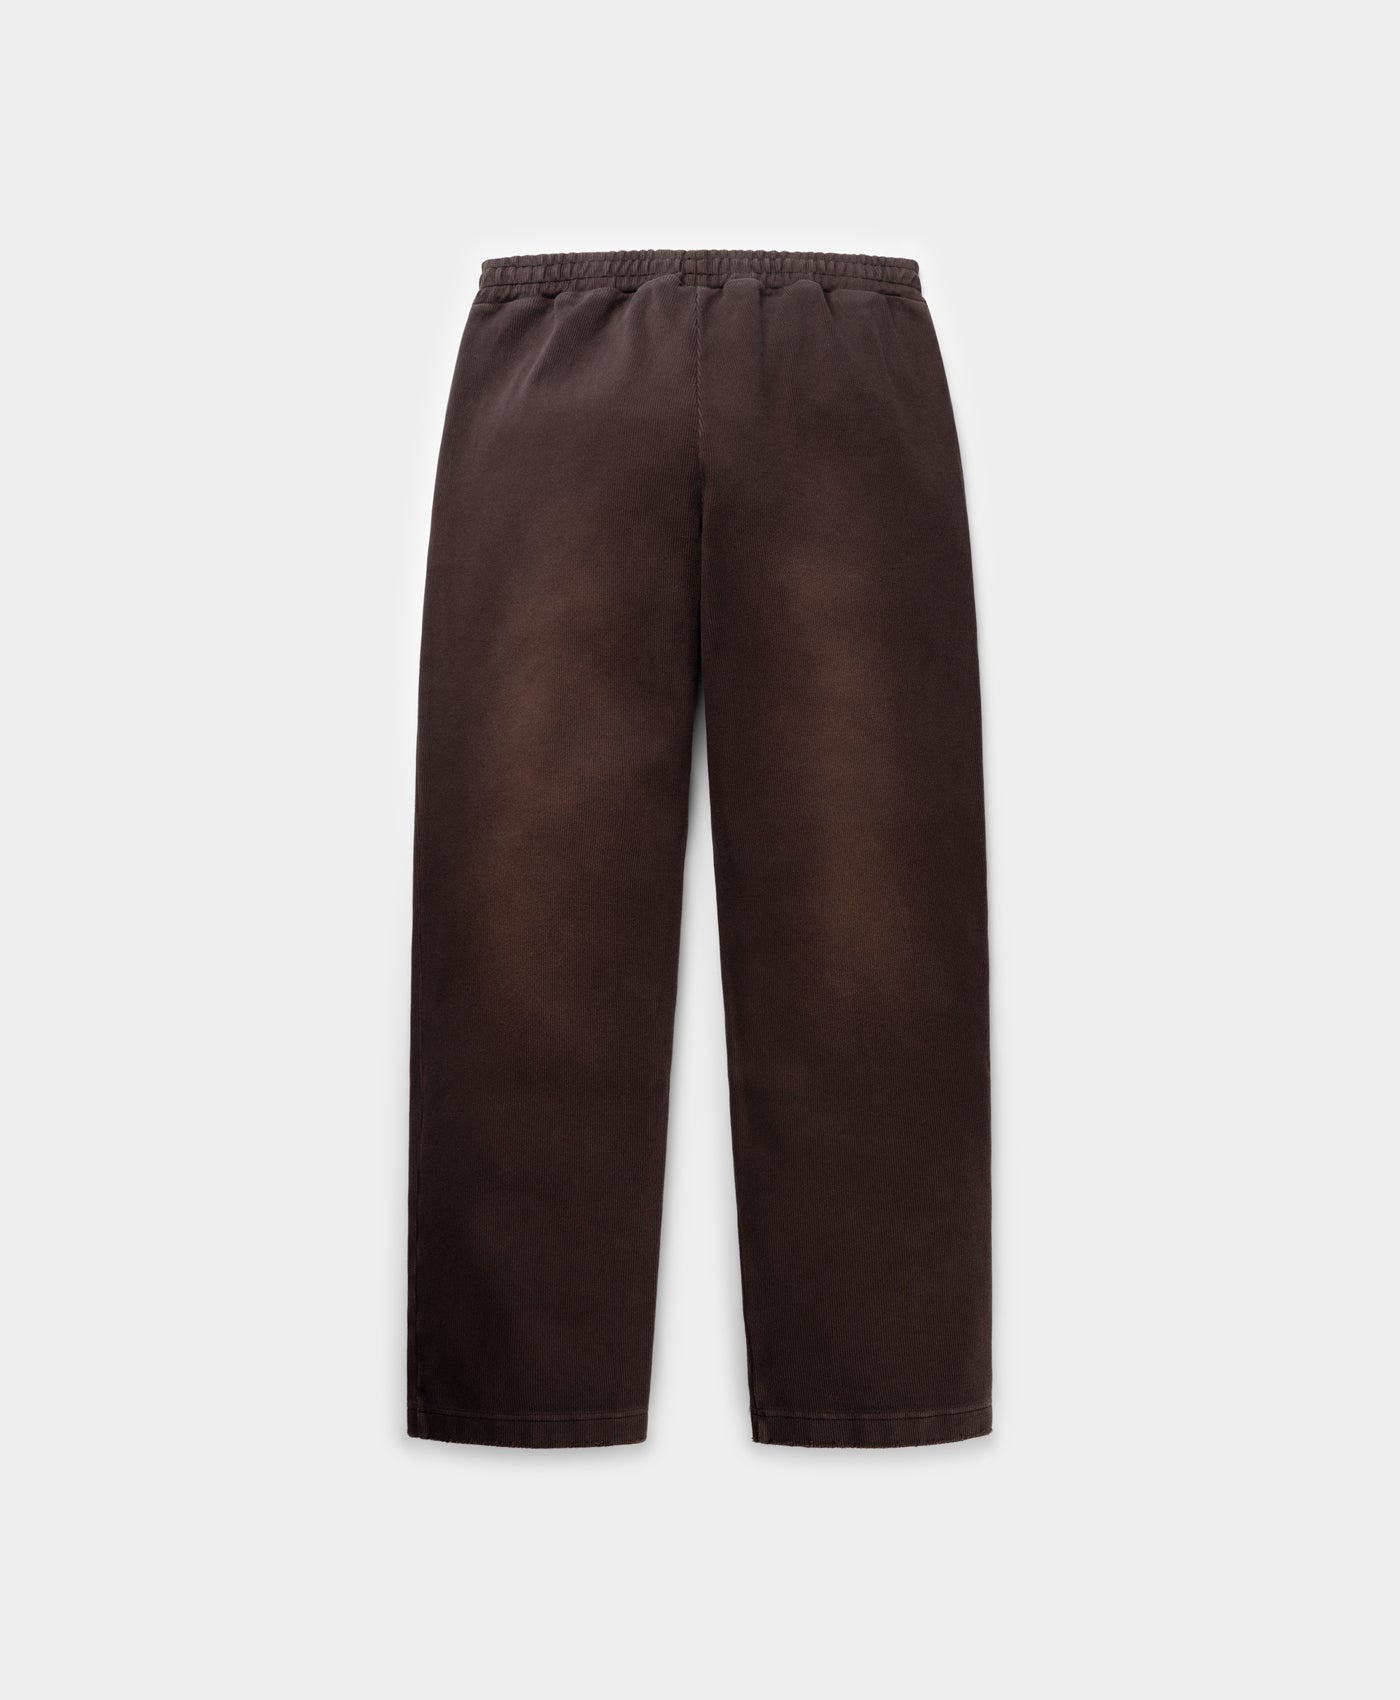 DP - Chocolate Brown Rodell Pants - Packshot - Rear